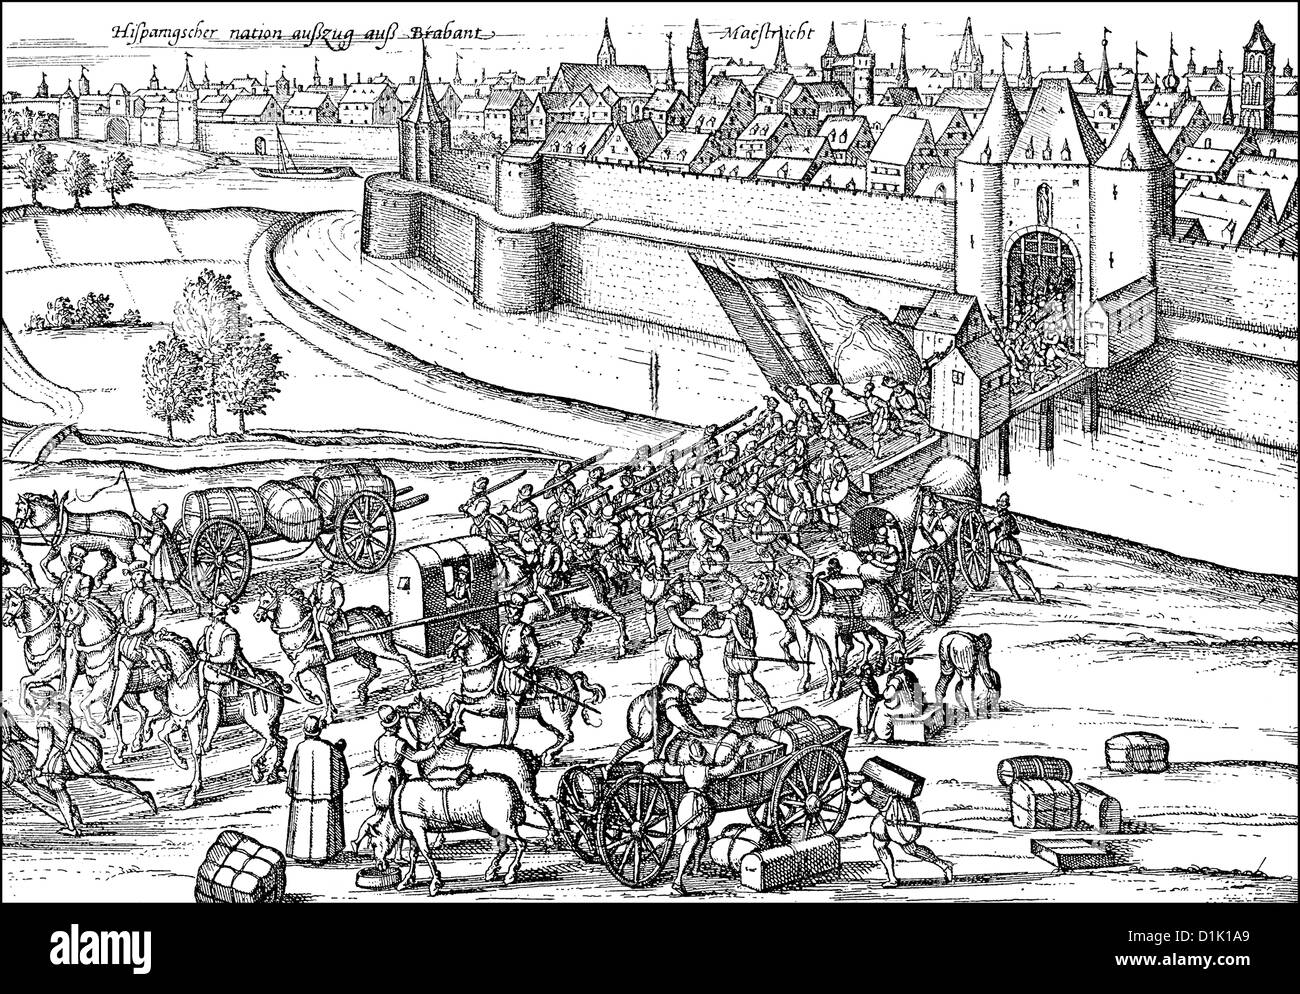 Les Espagnols de quitter les Pays-Bas, départ de la ville de Maastricht, Pays-Bas espagnols, 16e siècle Banque D'Images